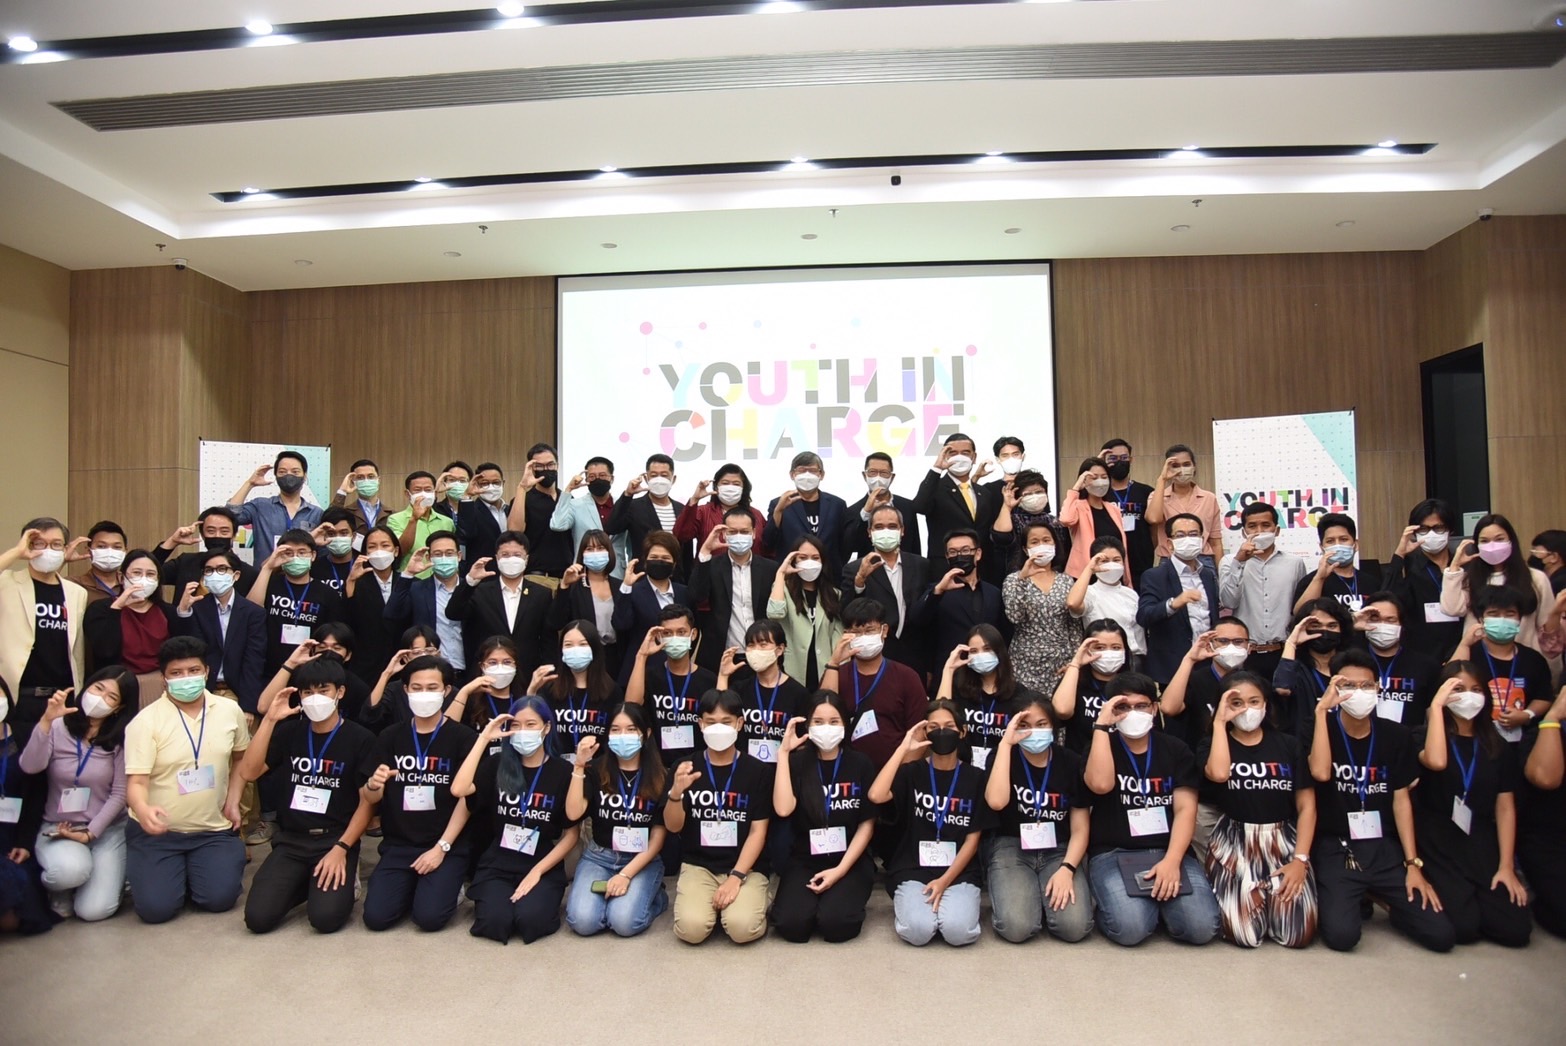 วช. จับมือภาคีเครือข่ายผลักดันเยาวชนไทยร่วมขับเคลื่อนโมเดลเศรษฐกิจ BCG ภายใต้แพลตฟอร์ม Youth In Charge